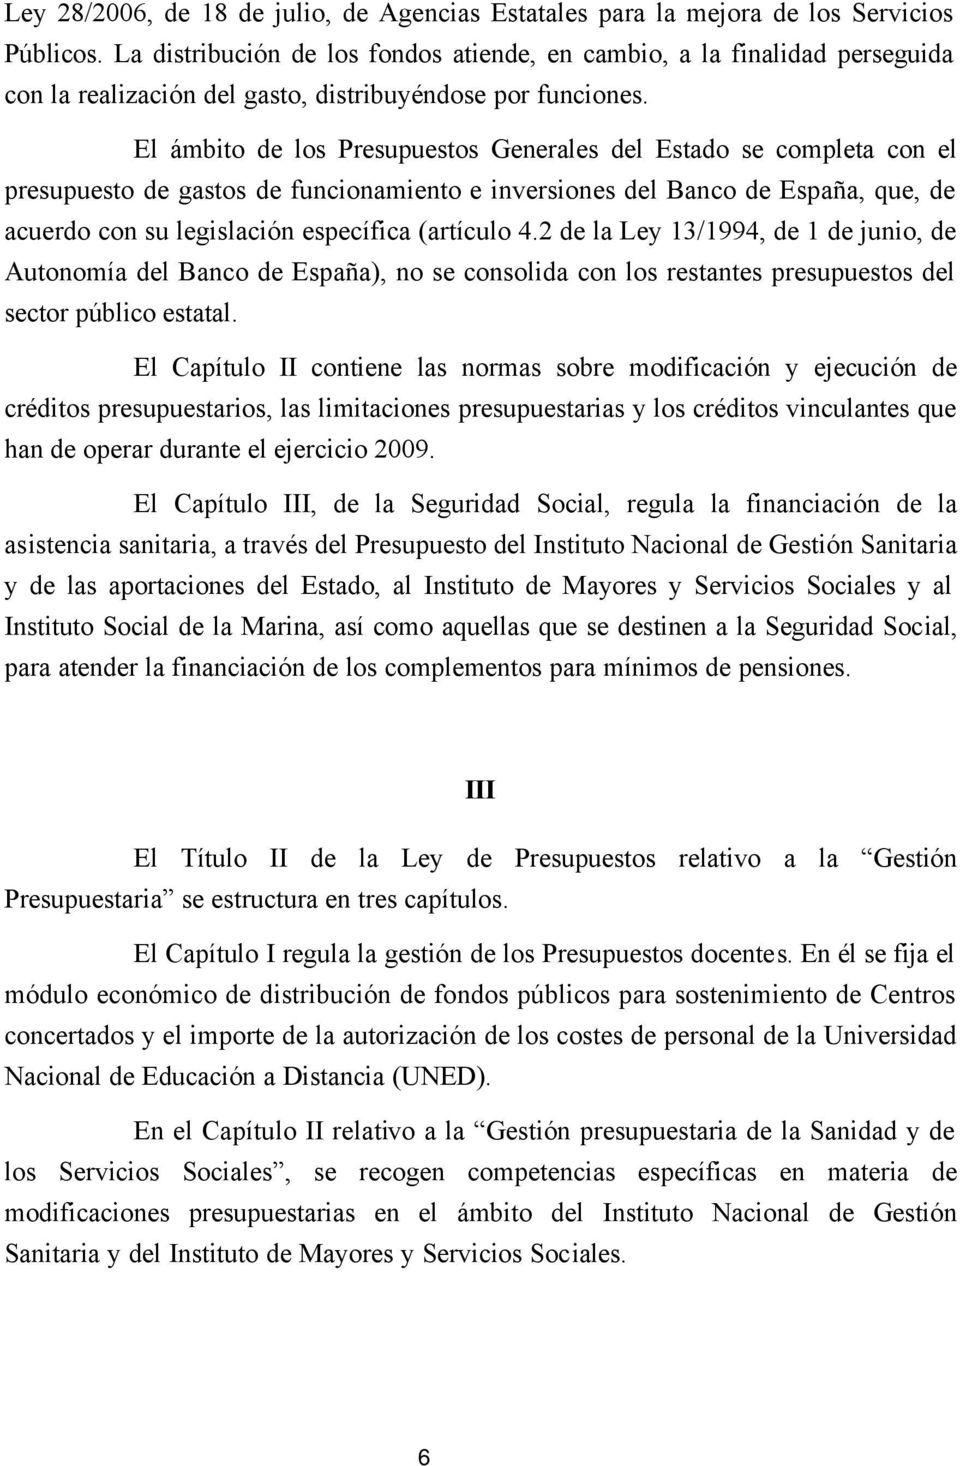 El ámbito de los Presupuestos Generales del Estado se completa con el presupuesto de gastos de funcionamiento e inversiones del Banco de España, que, de acuerdo con su legislación específica